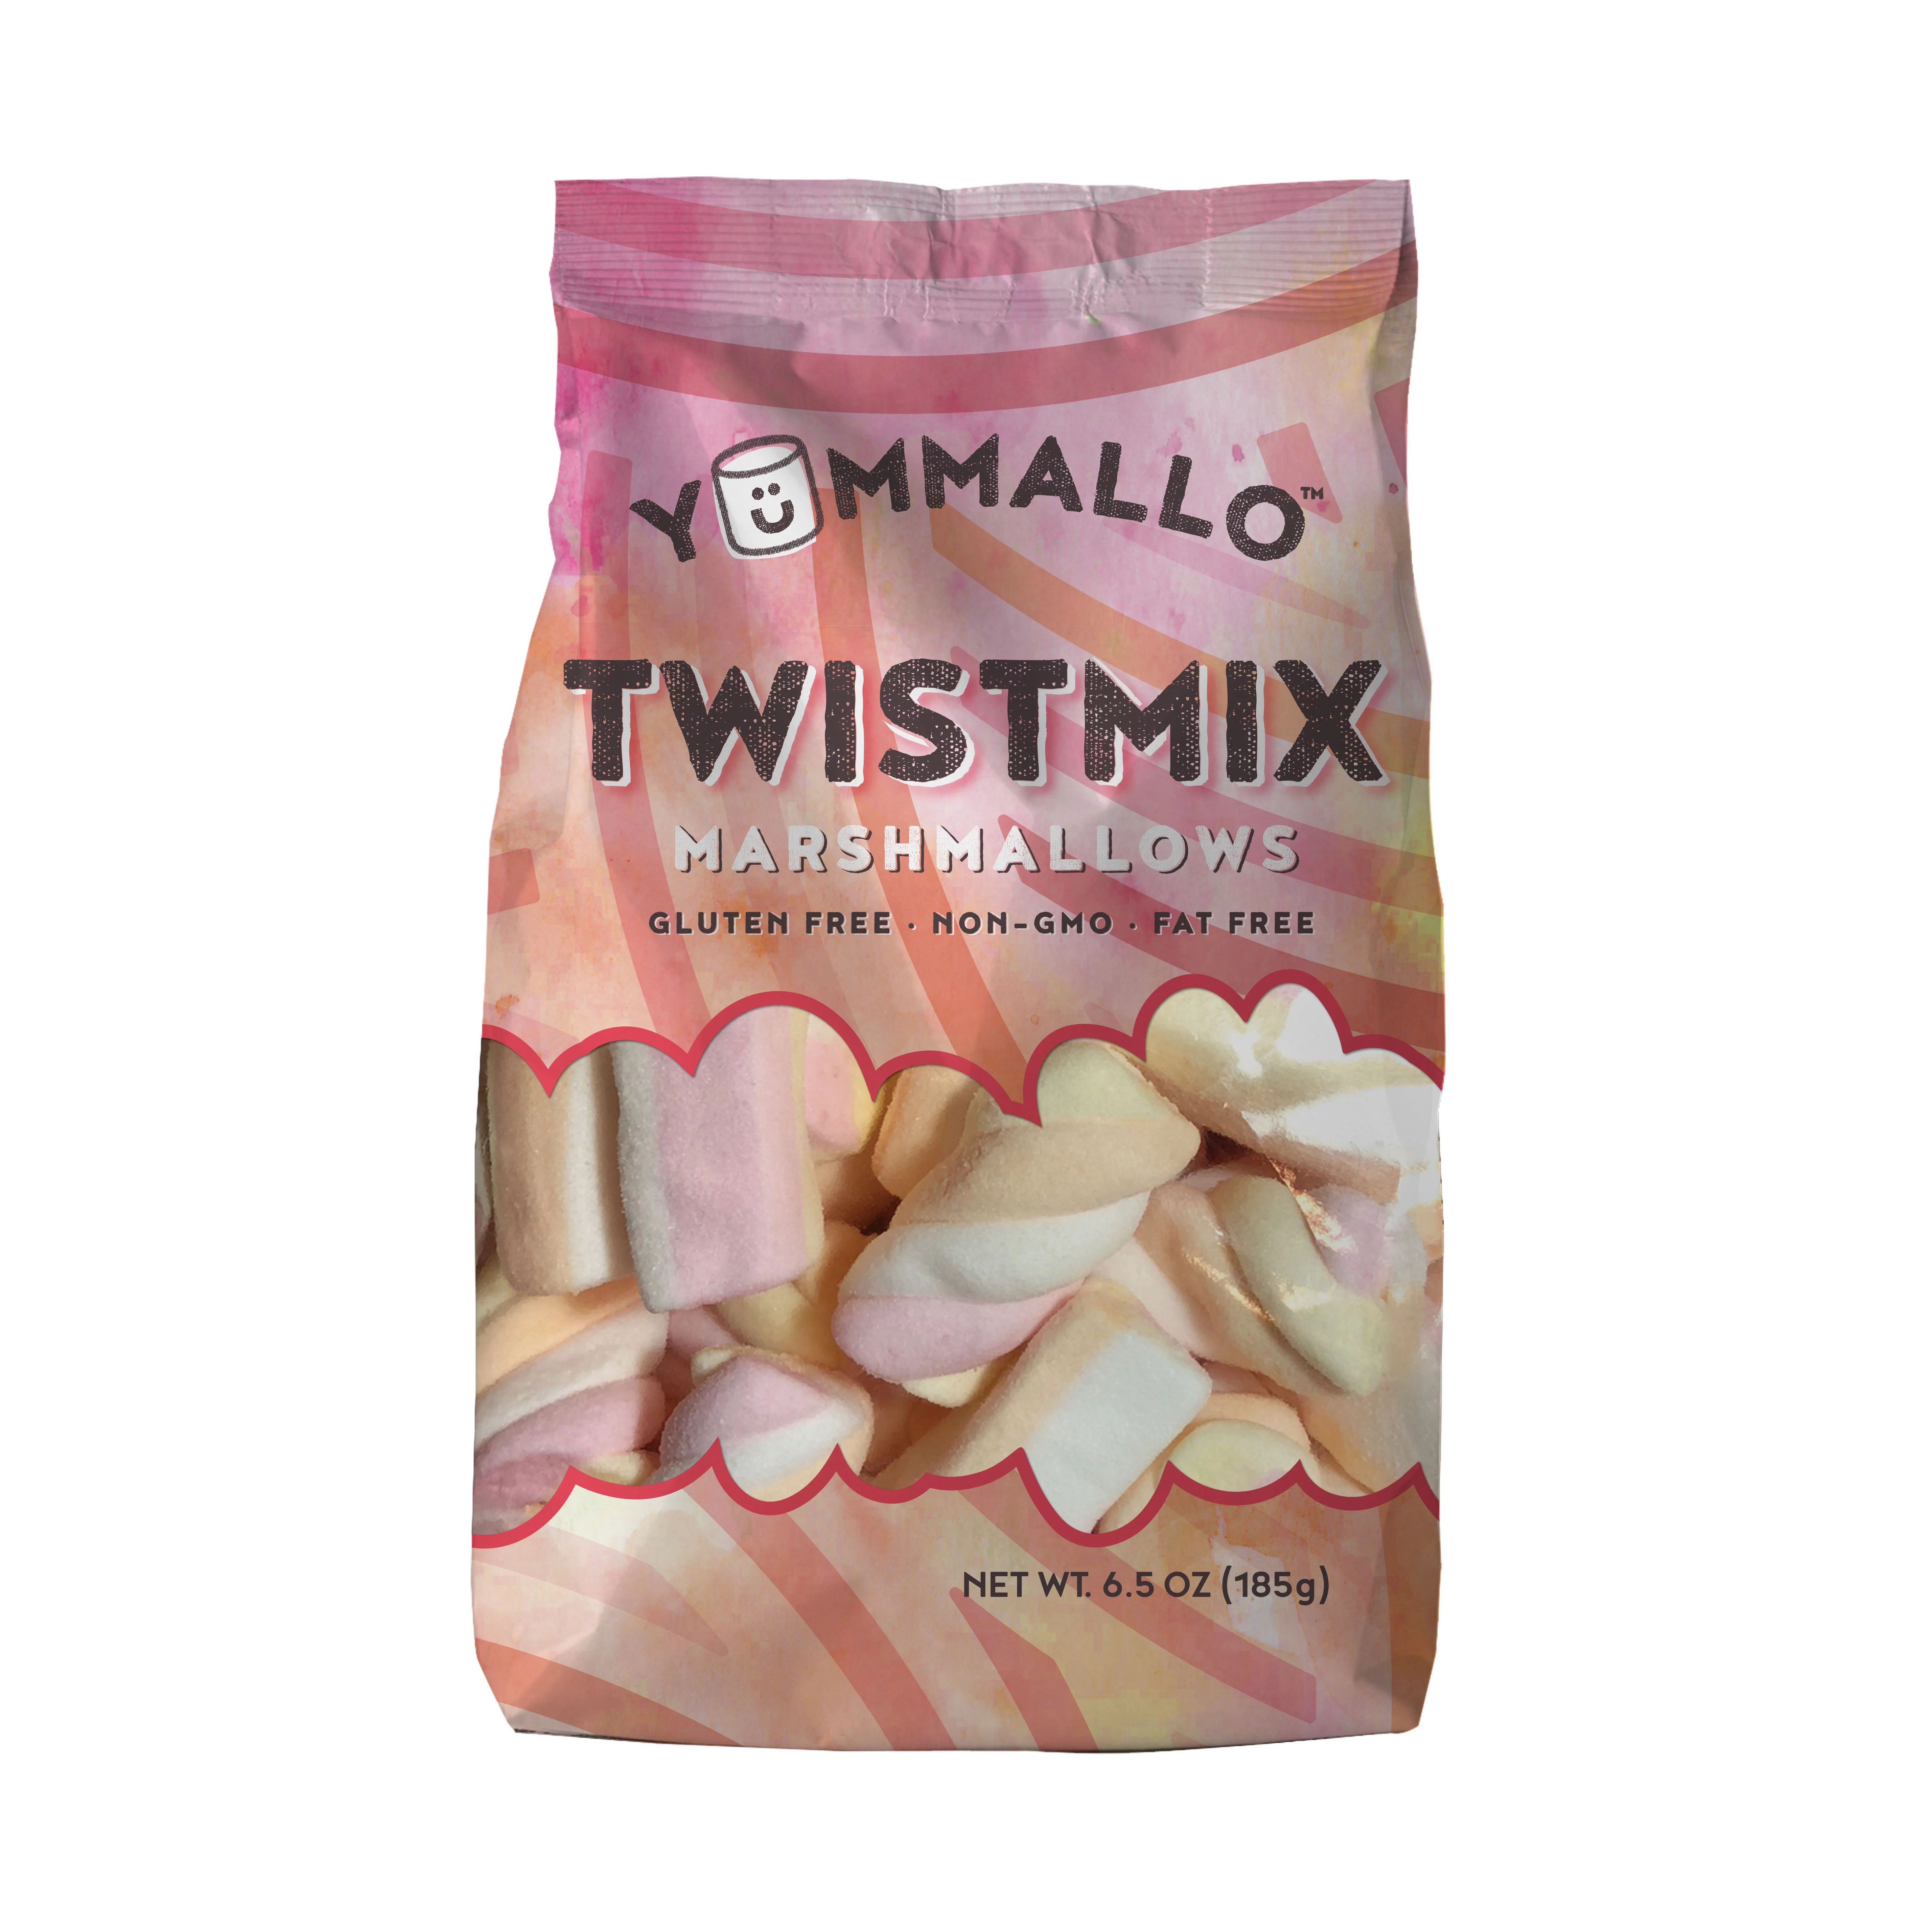 Yummallo Twistmix Marshmallows, 6.5 oz | Walmart (US)